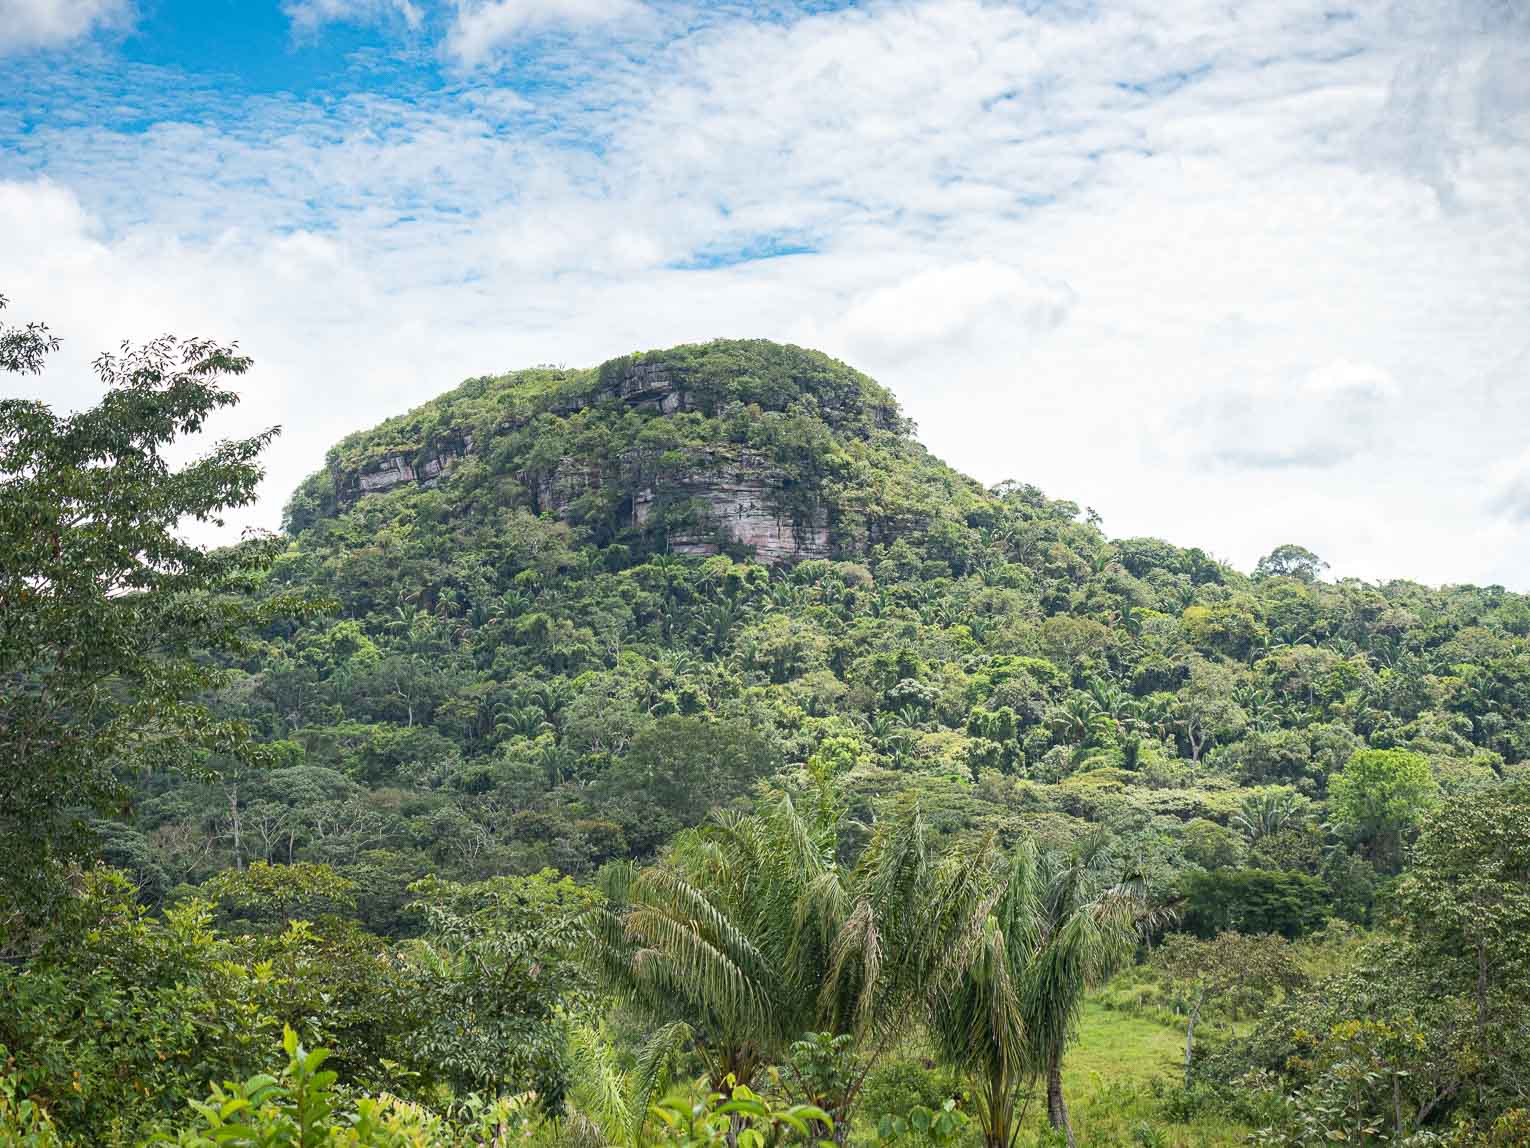 Cerro Azul dans le Guaviare, la chapelle sixtine de l'Amazonie